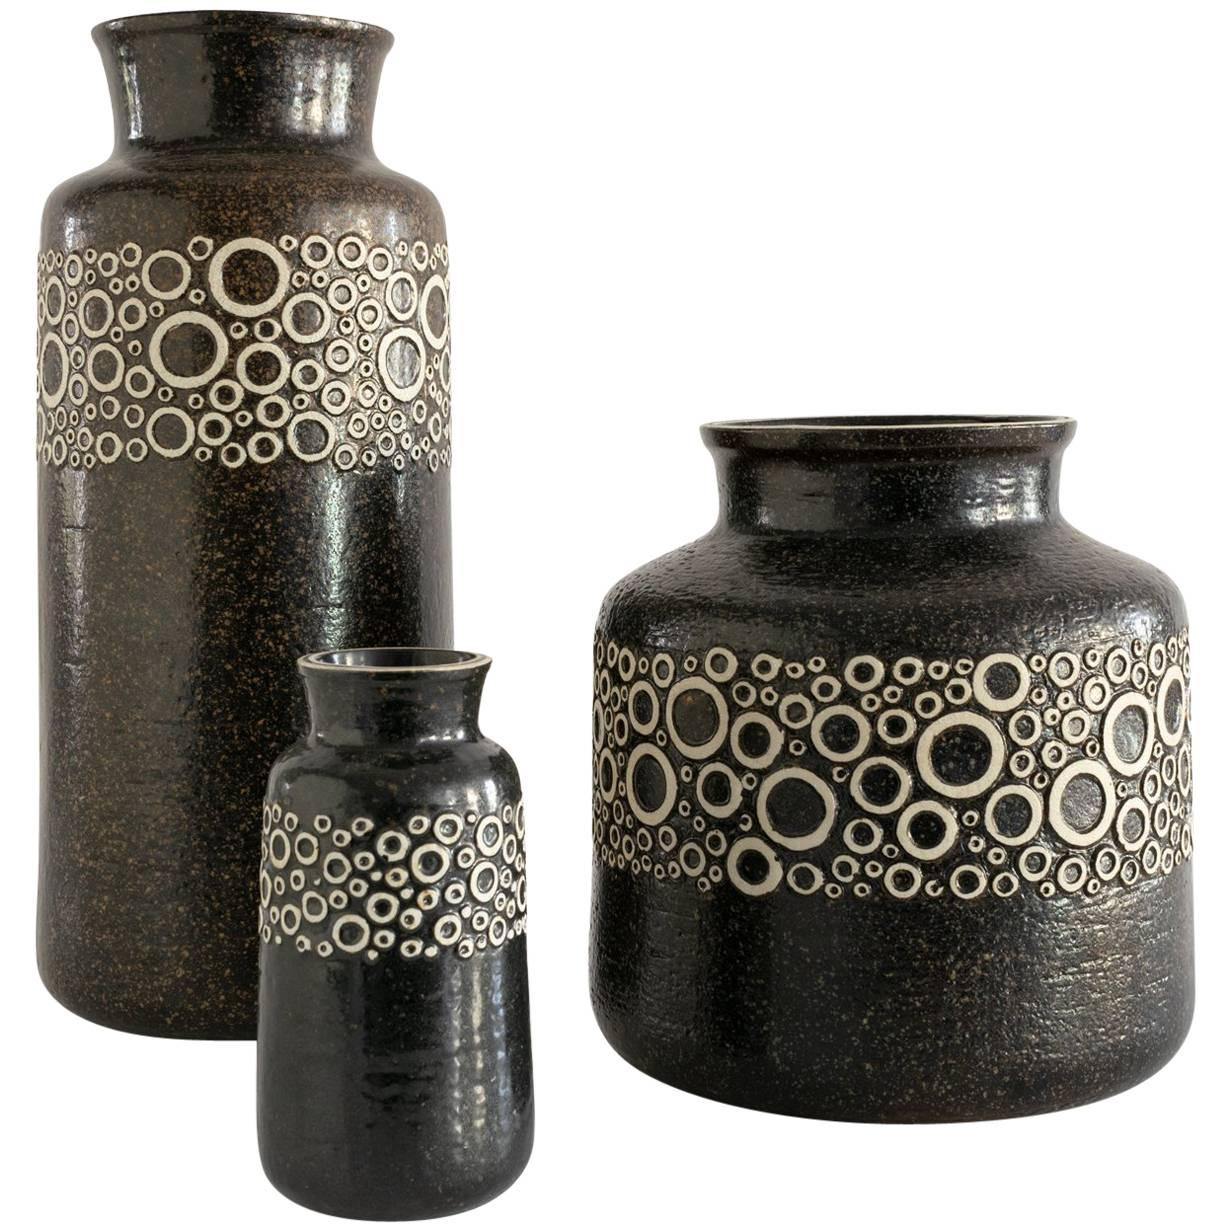 Three Scandinavian Modern Charmotte "Kreta" Vases by Britt-Louise Sundell